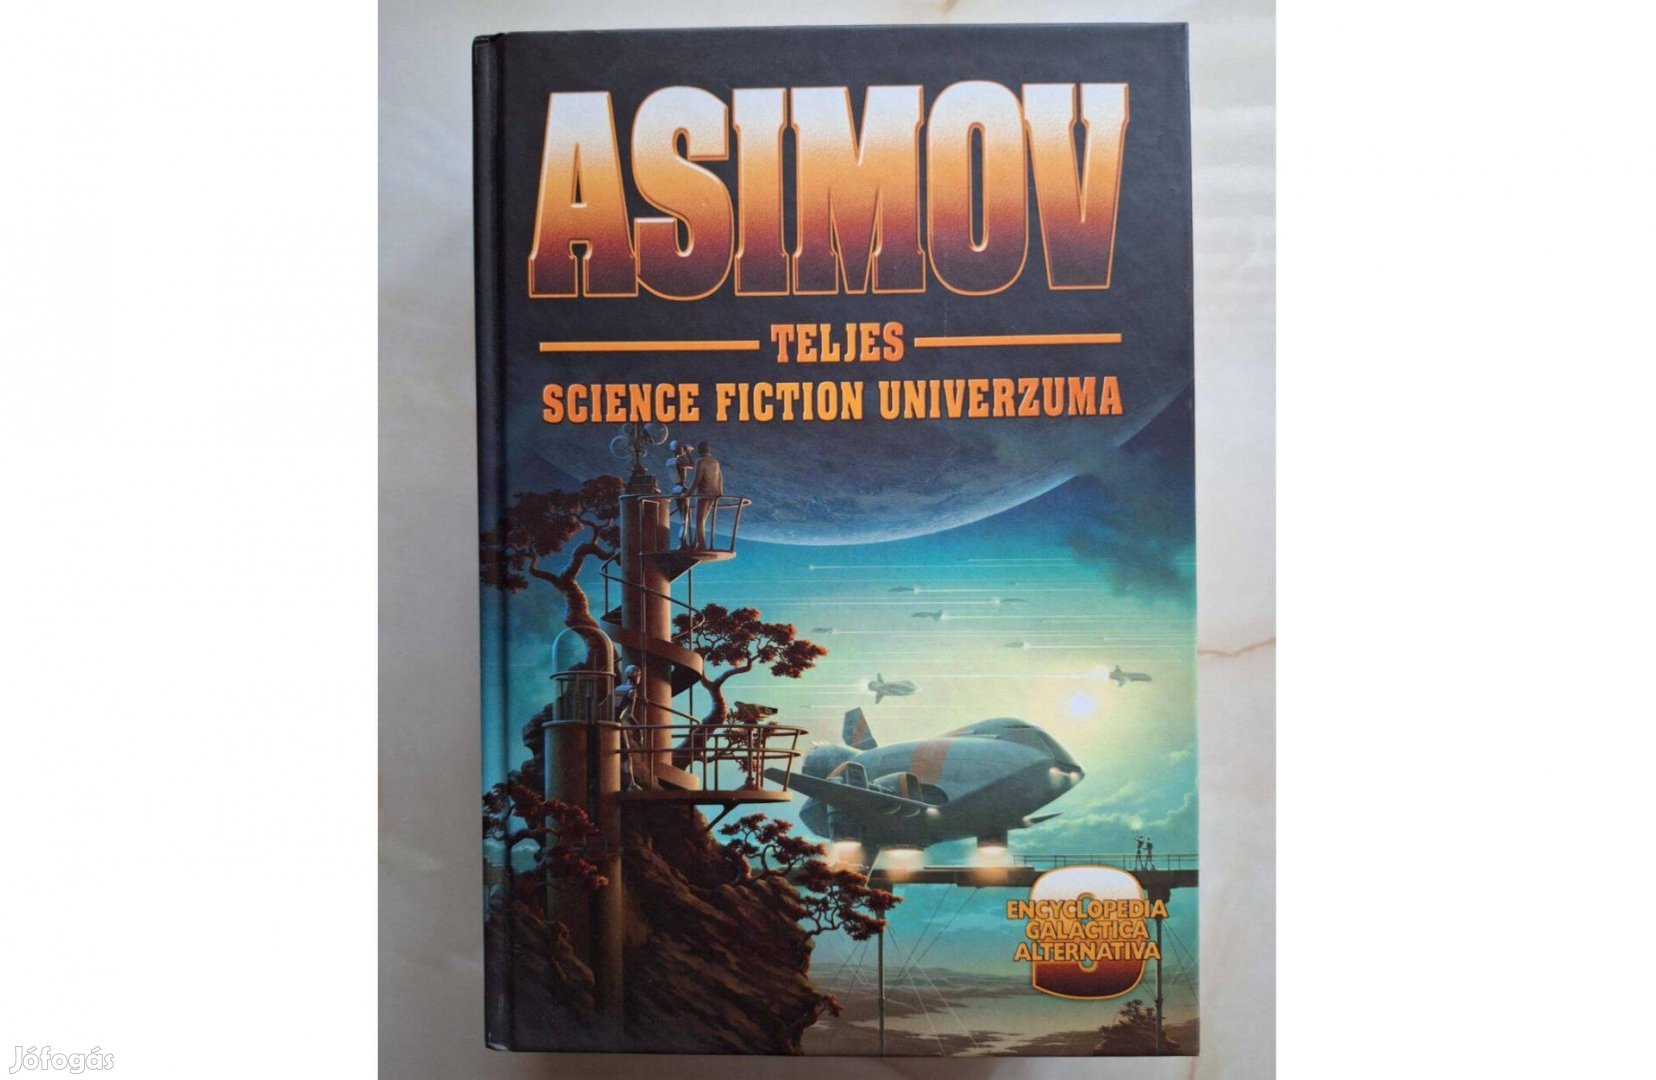 Asimov teljes III. és IX. kötet